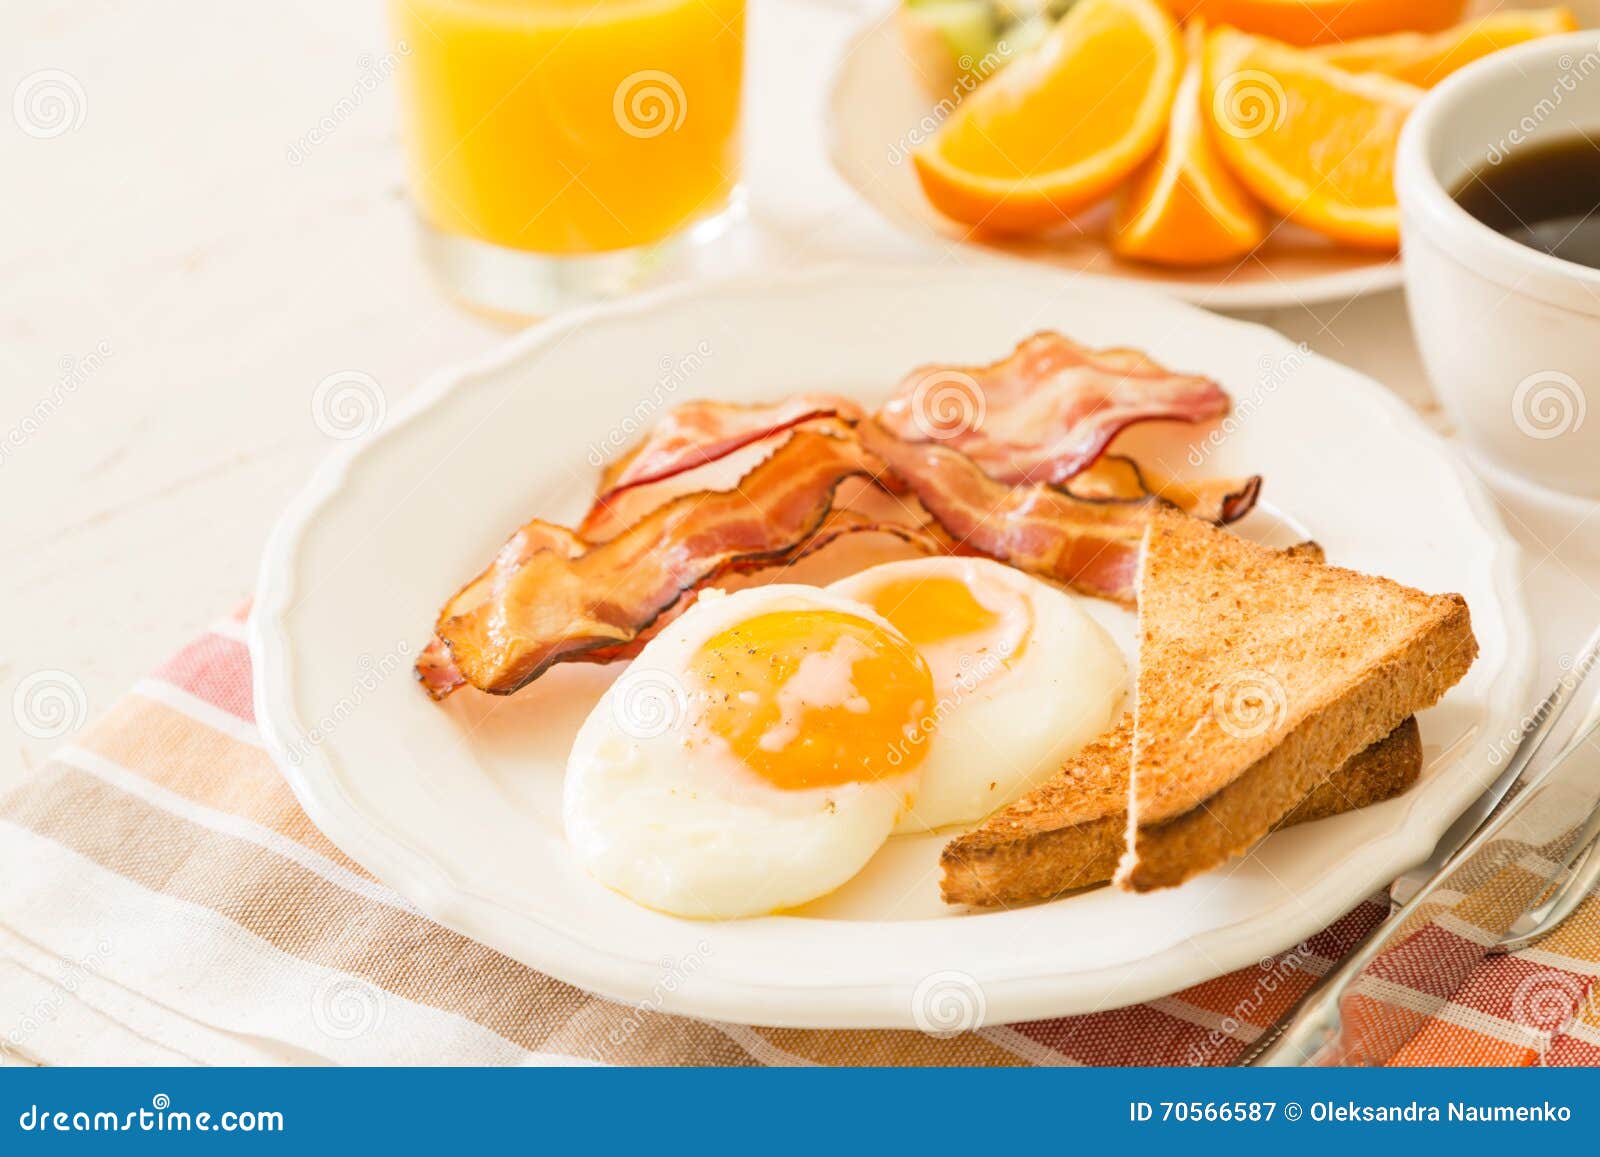 美国早餐 库存照片. 图片 包括有 空白, 黄色, 油煎, 英语, 用餐, 香肠, 红色, 牌照, 查出 - 44987762